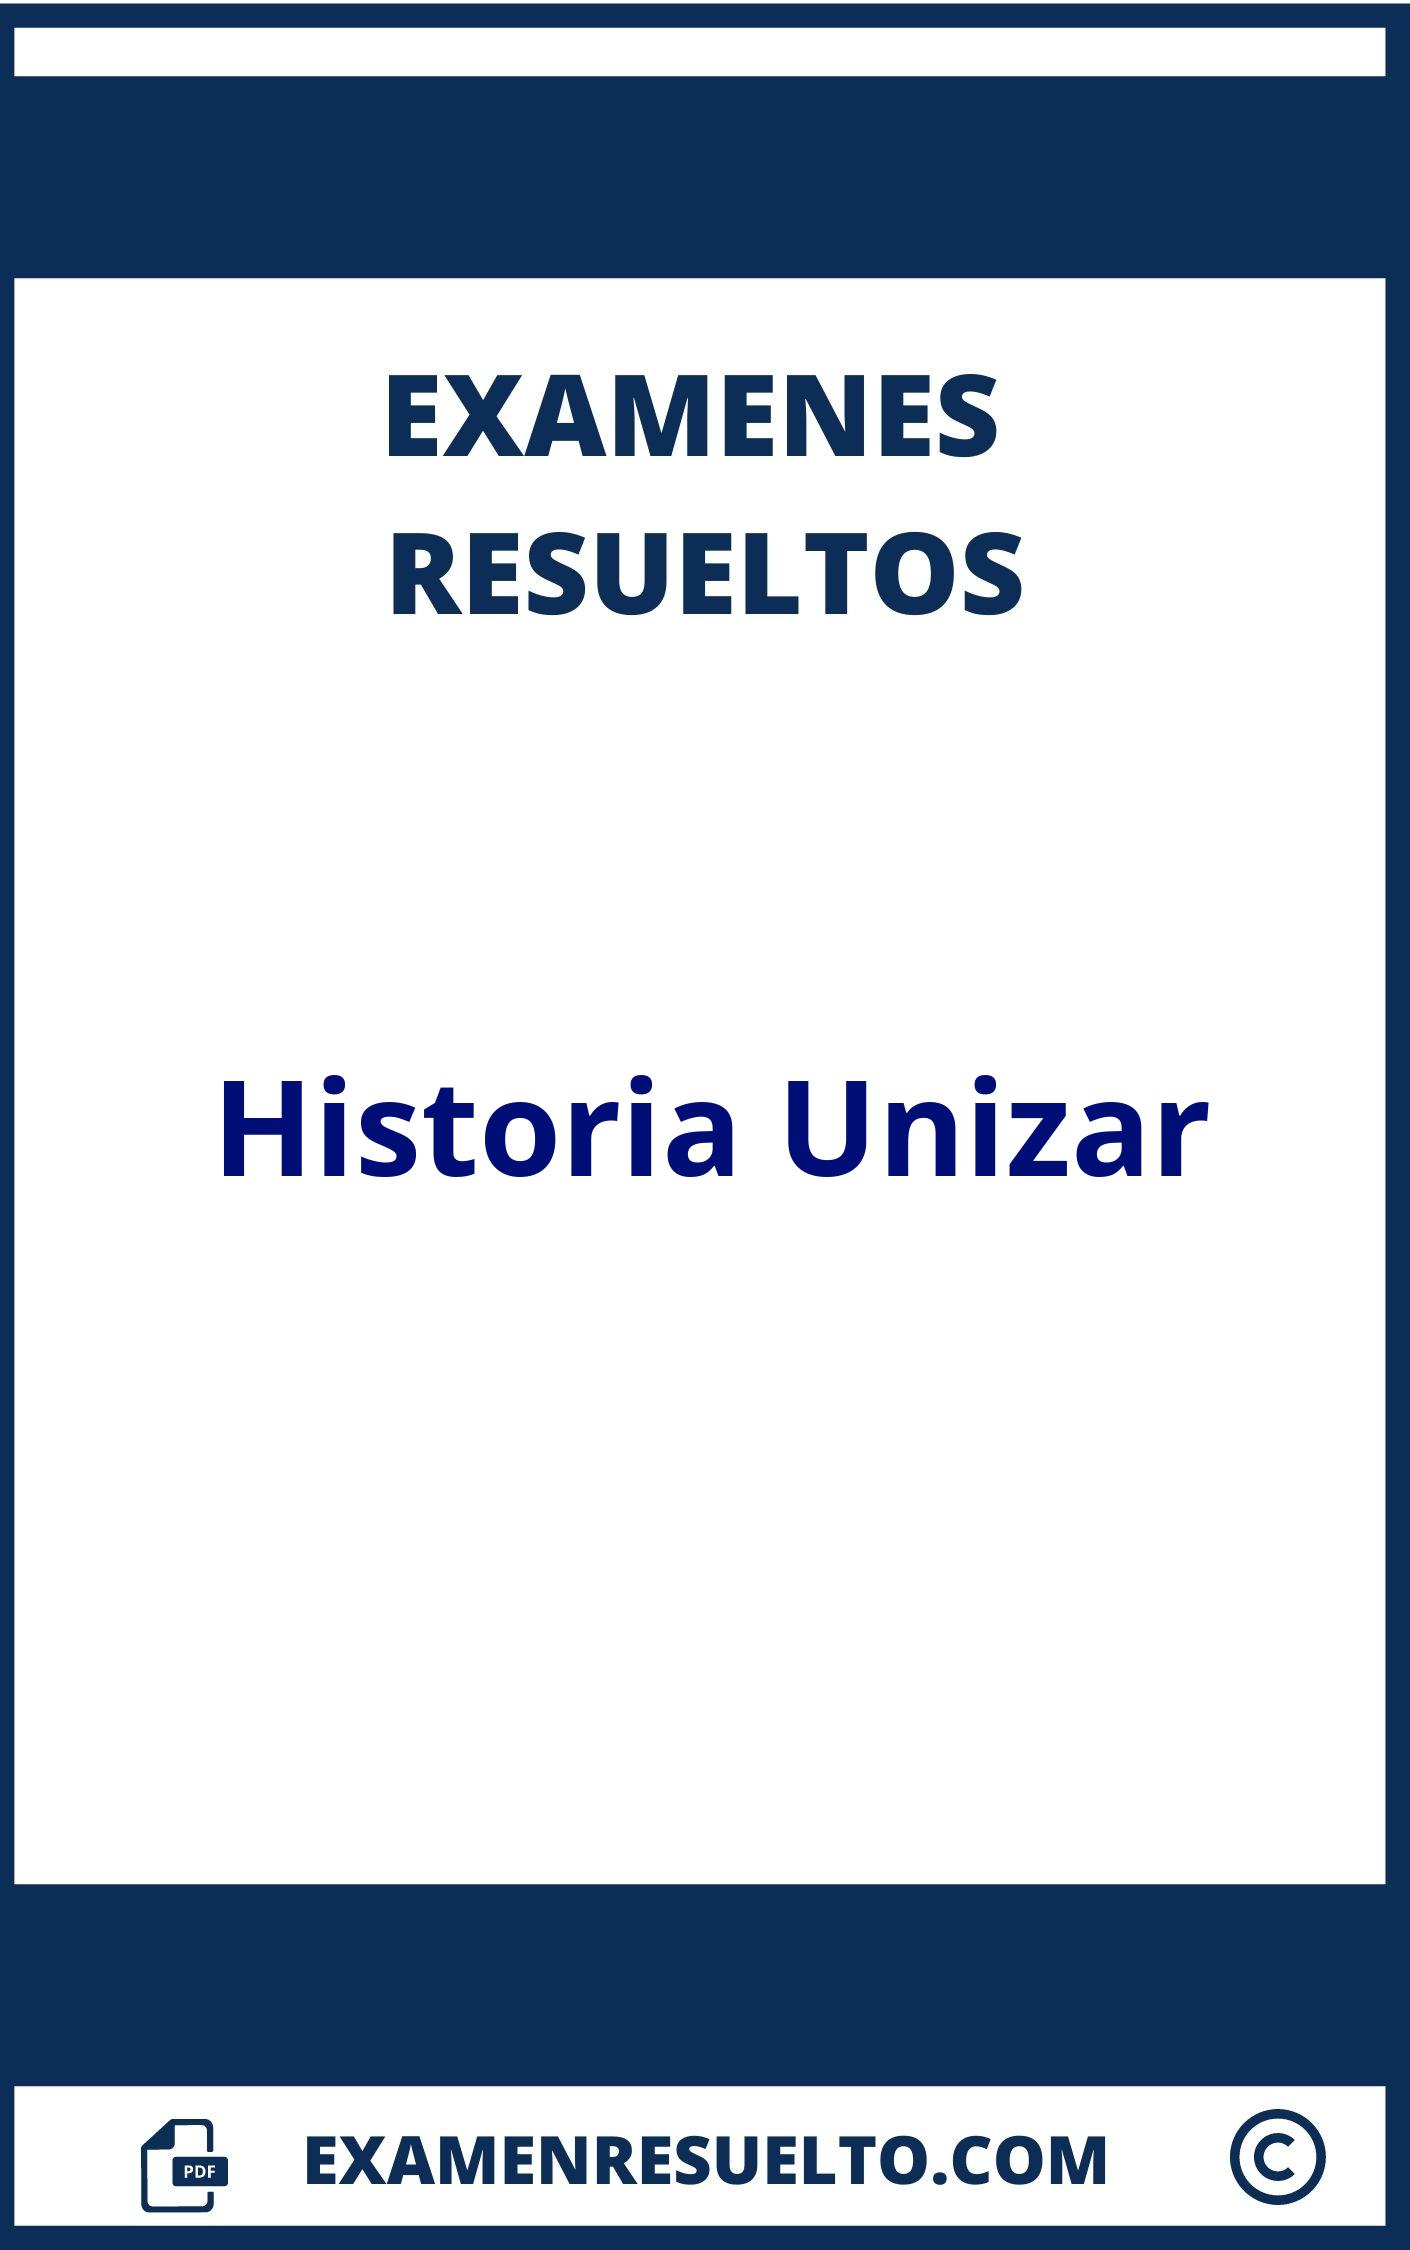 Examenes Historia Unizar Resueltos